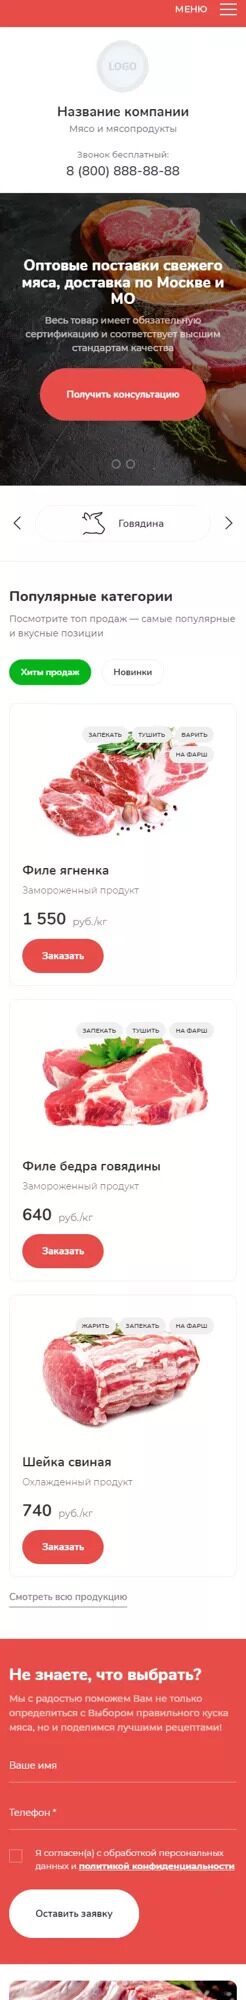 Готовый Сайт-Бизнес № 3937879 - Поставка мяса и мясопродуктов (Мобильная версия)